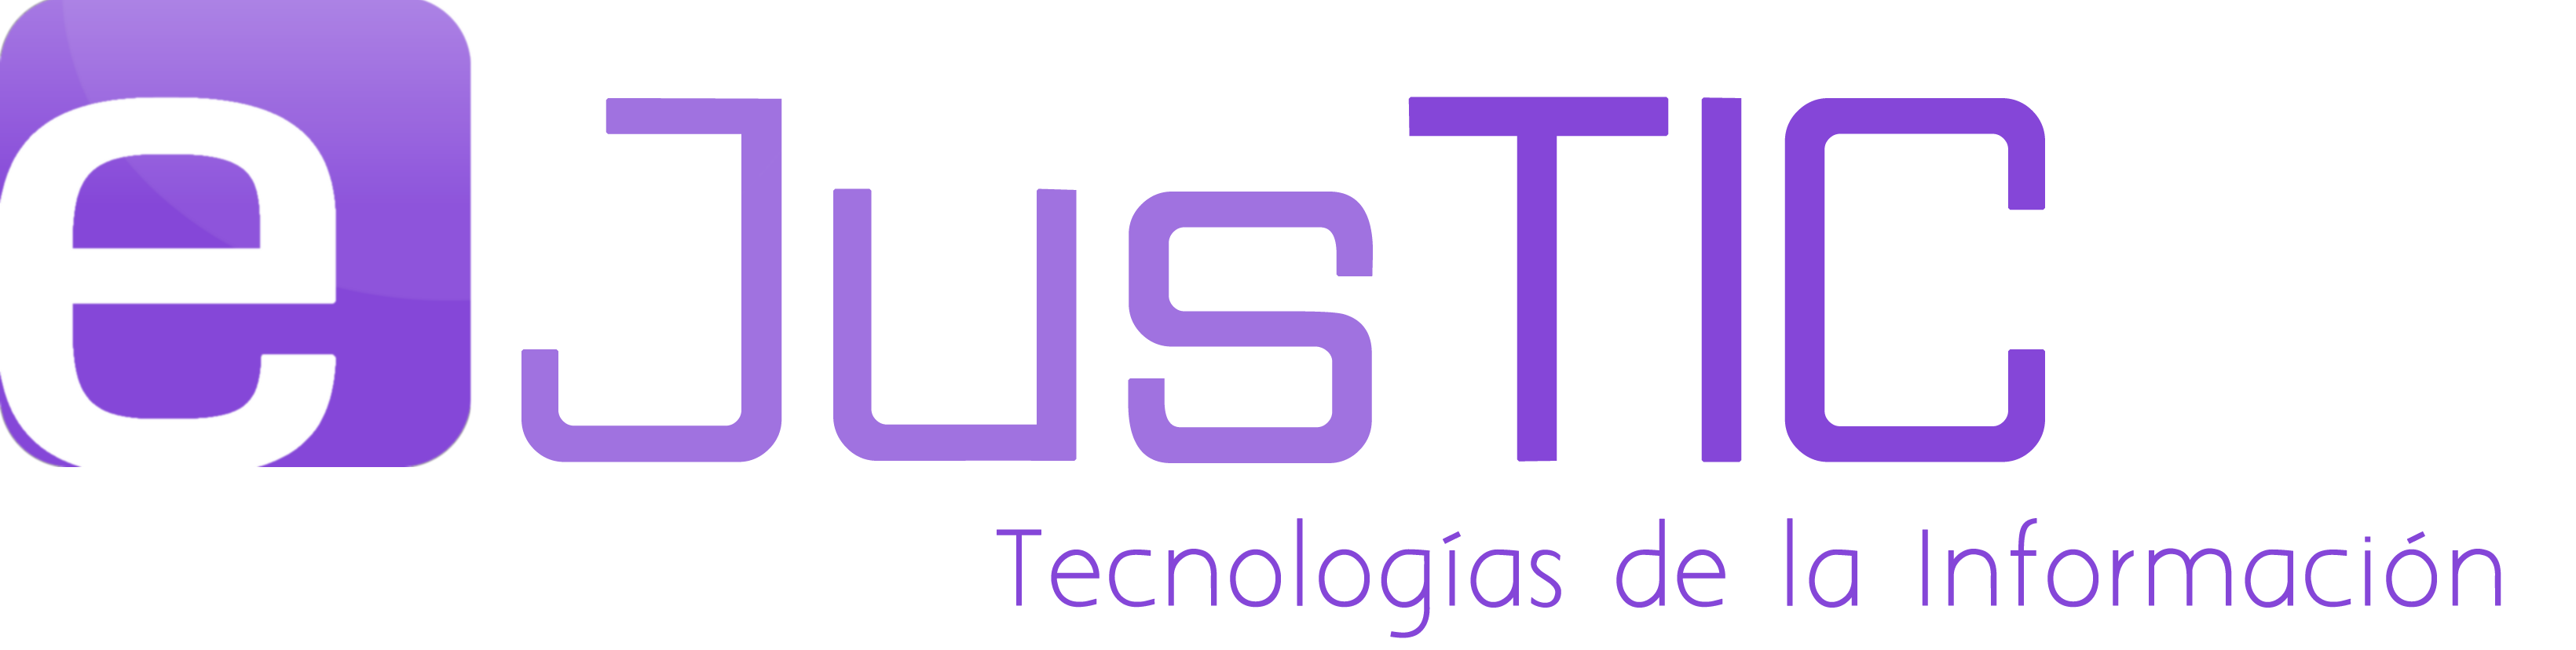 eJusTIC logo v5 recortado eslogan PNGPLANO